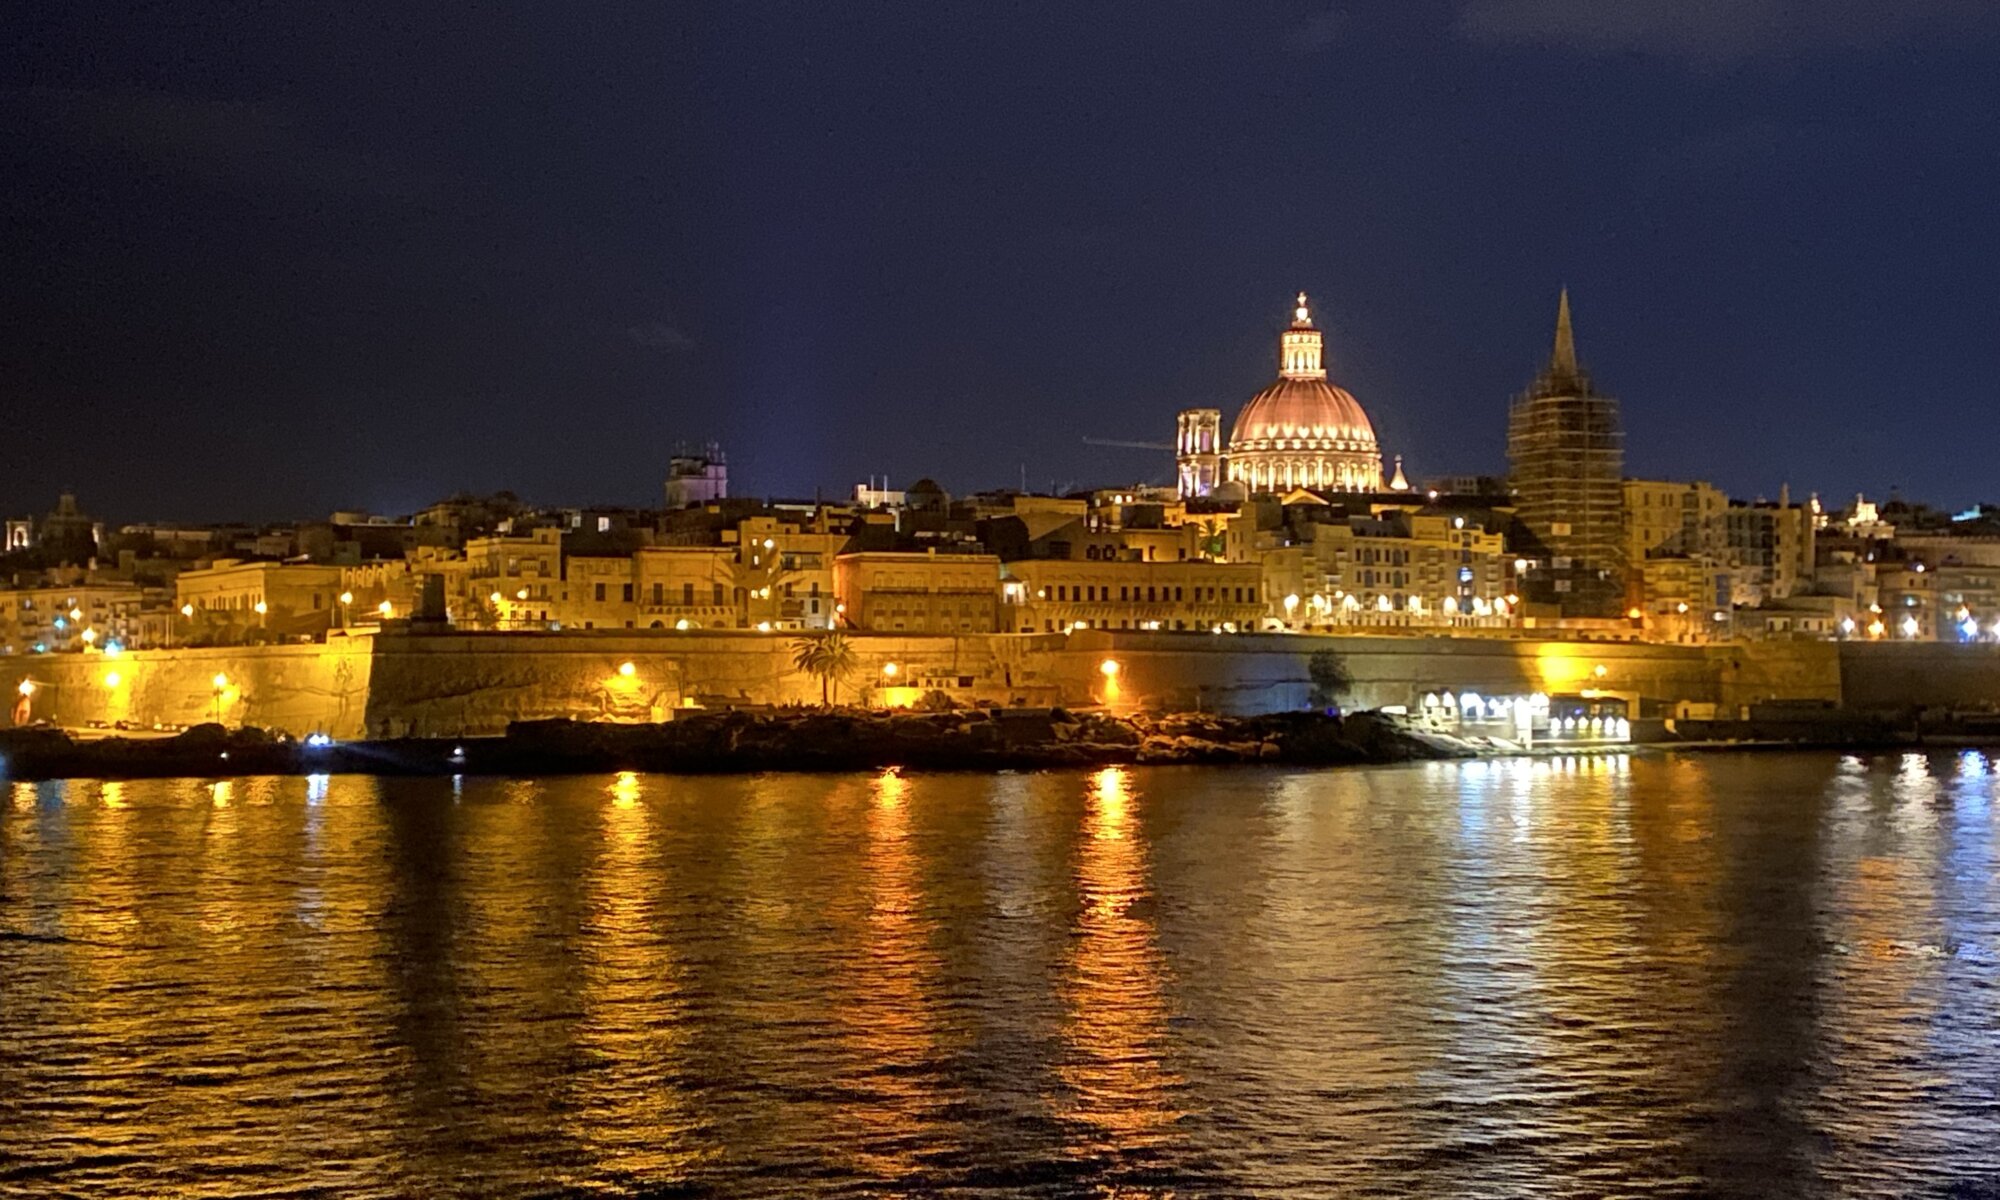 Valletta at night, Sliema